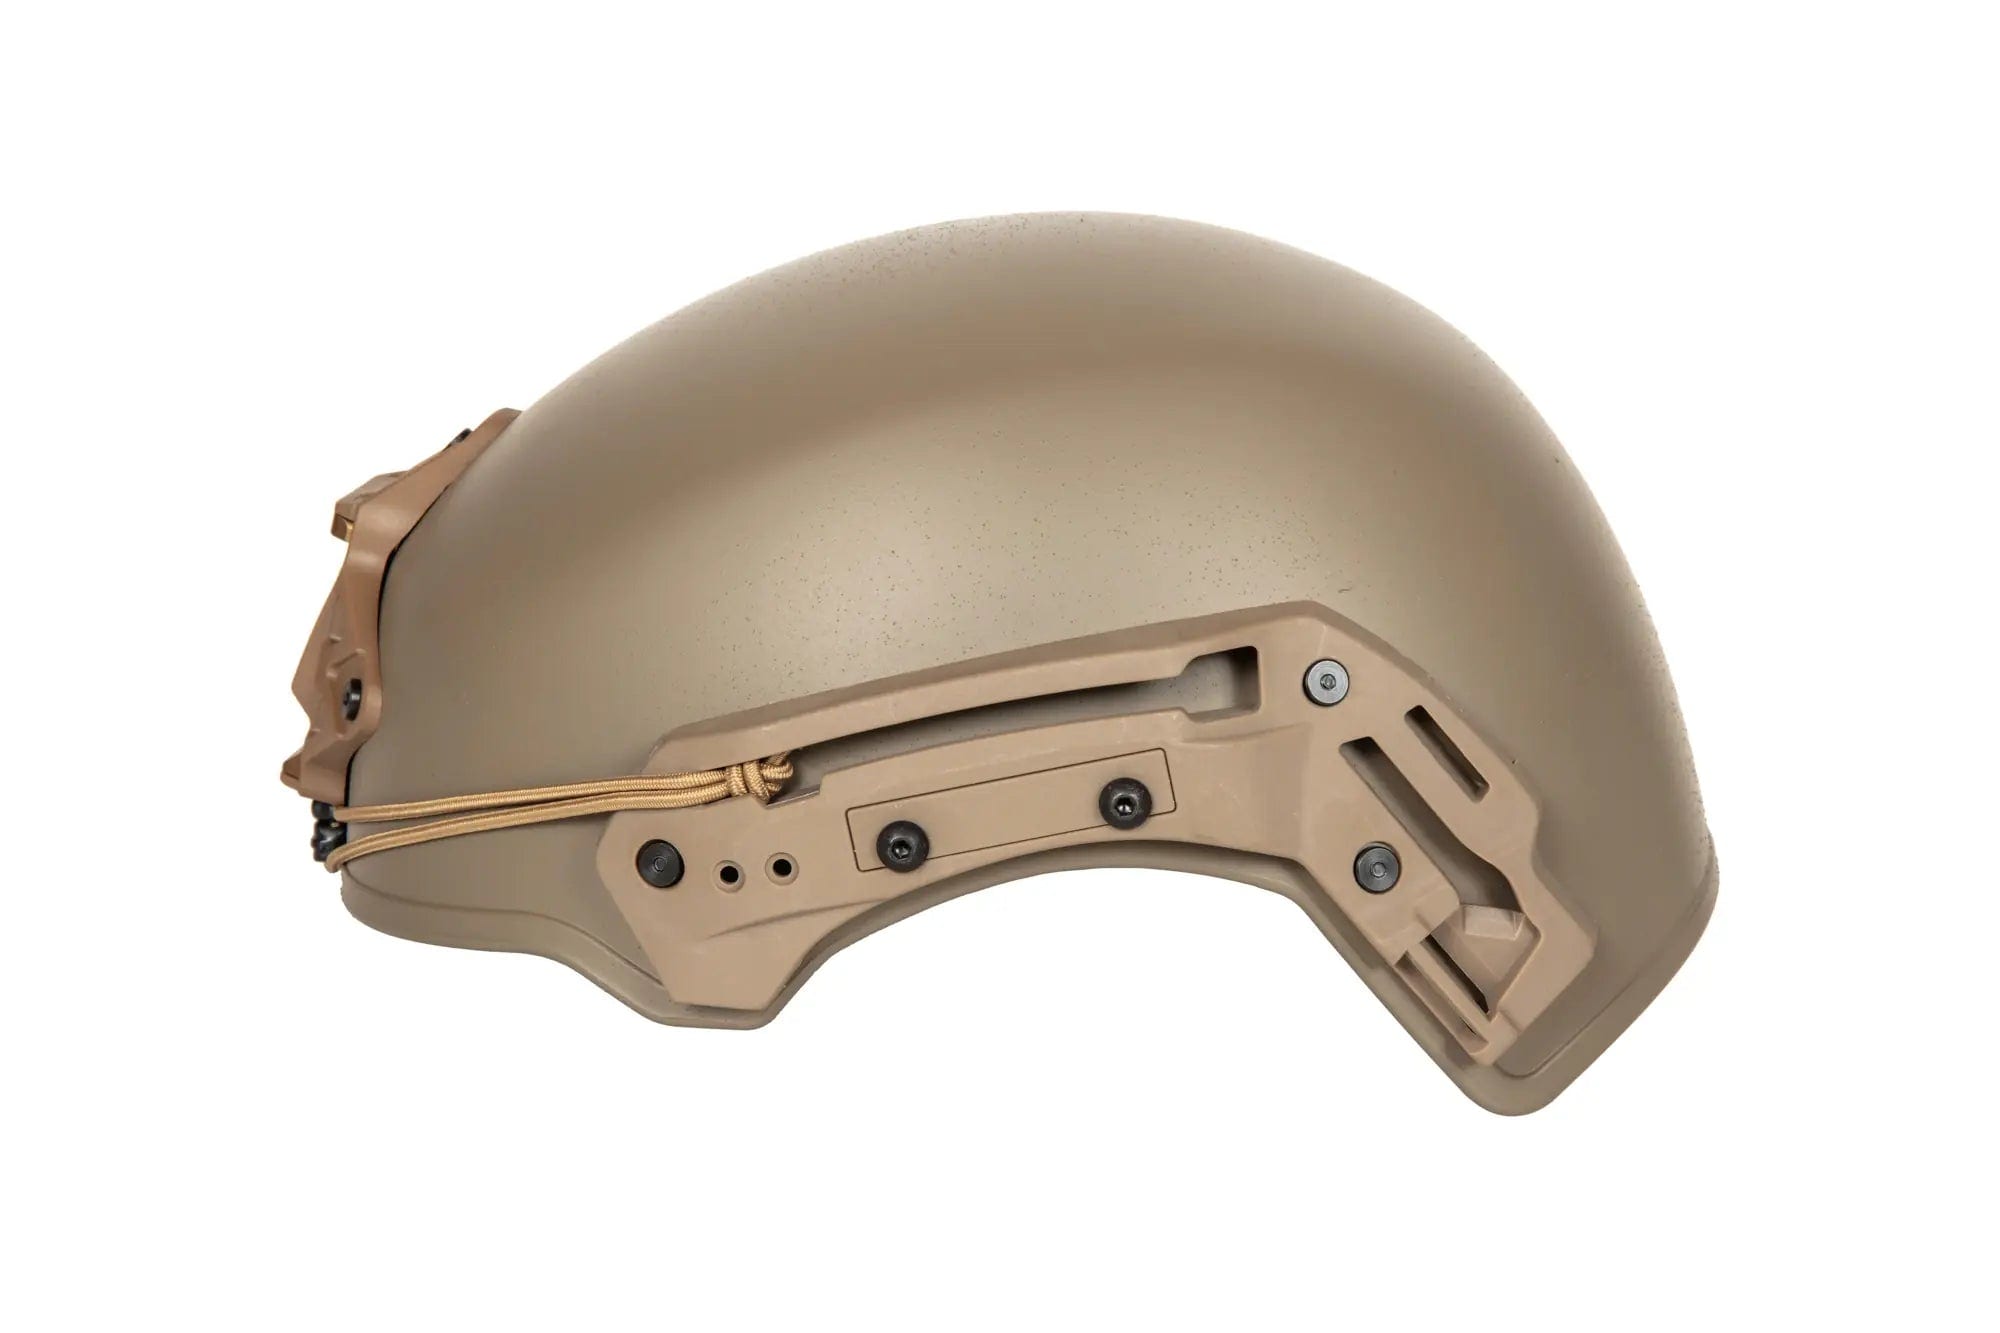 EXFIL helmet (L/XL) - Tan